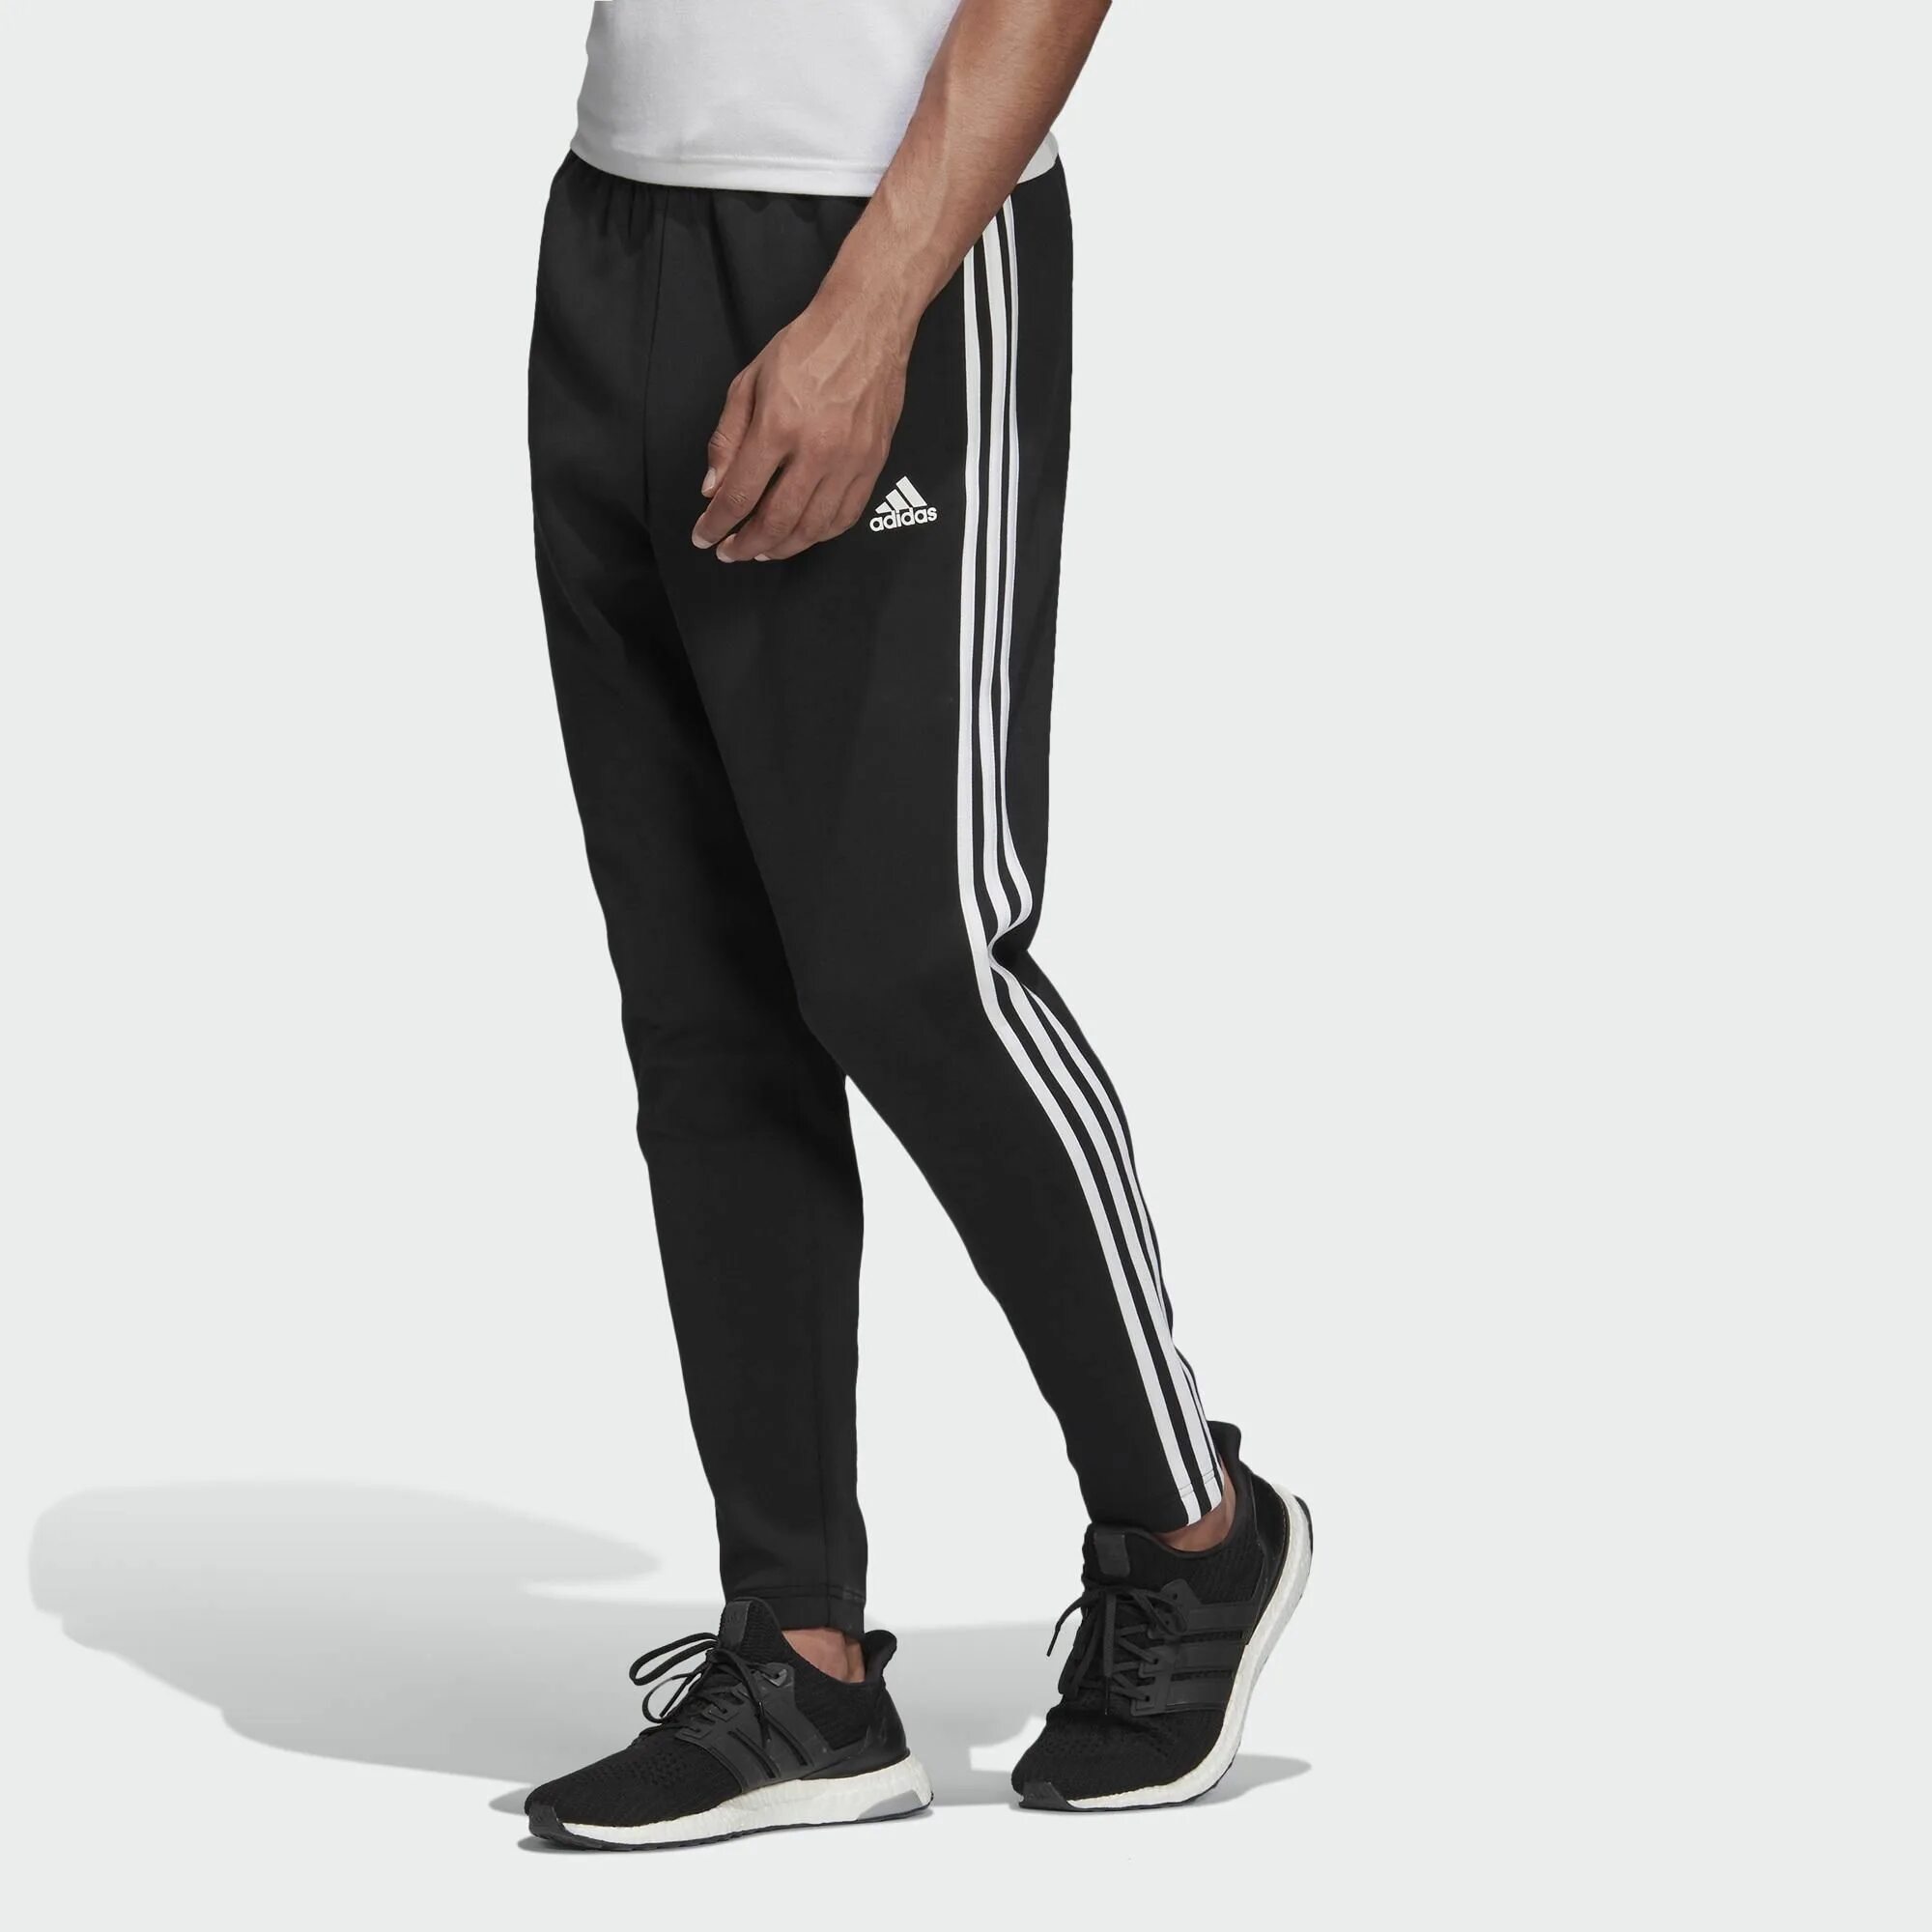 Adidas 3 Stripes штаны. Adidas Essentials 2013 штаны. Штаны адидас мужские черные. Adidas Originals брюки спортивные 3-Stripes Cargo. Спортивное штаны купить недорого